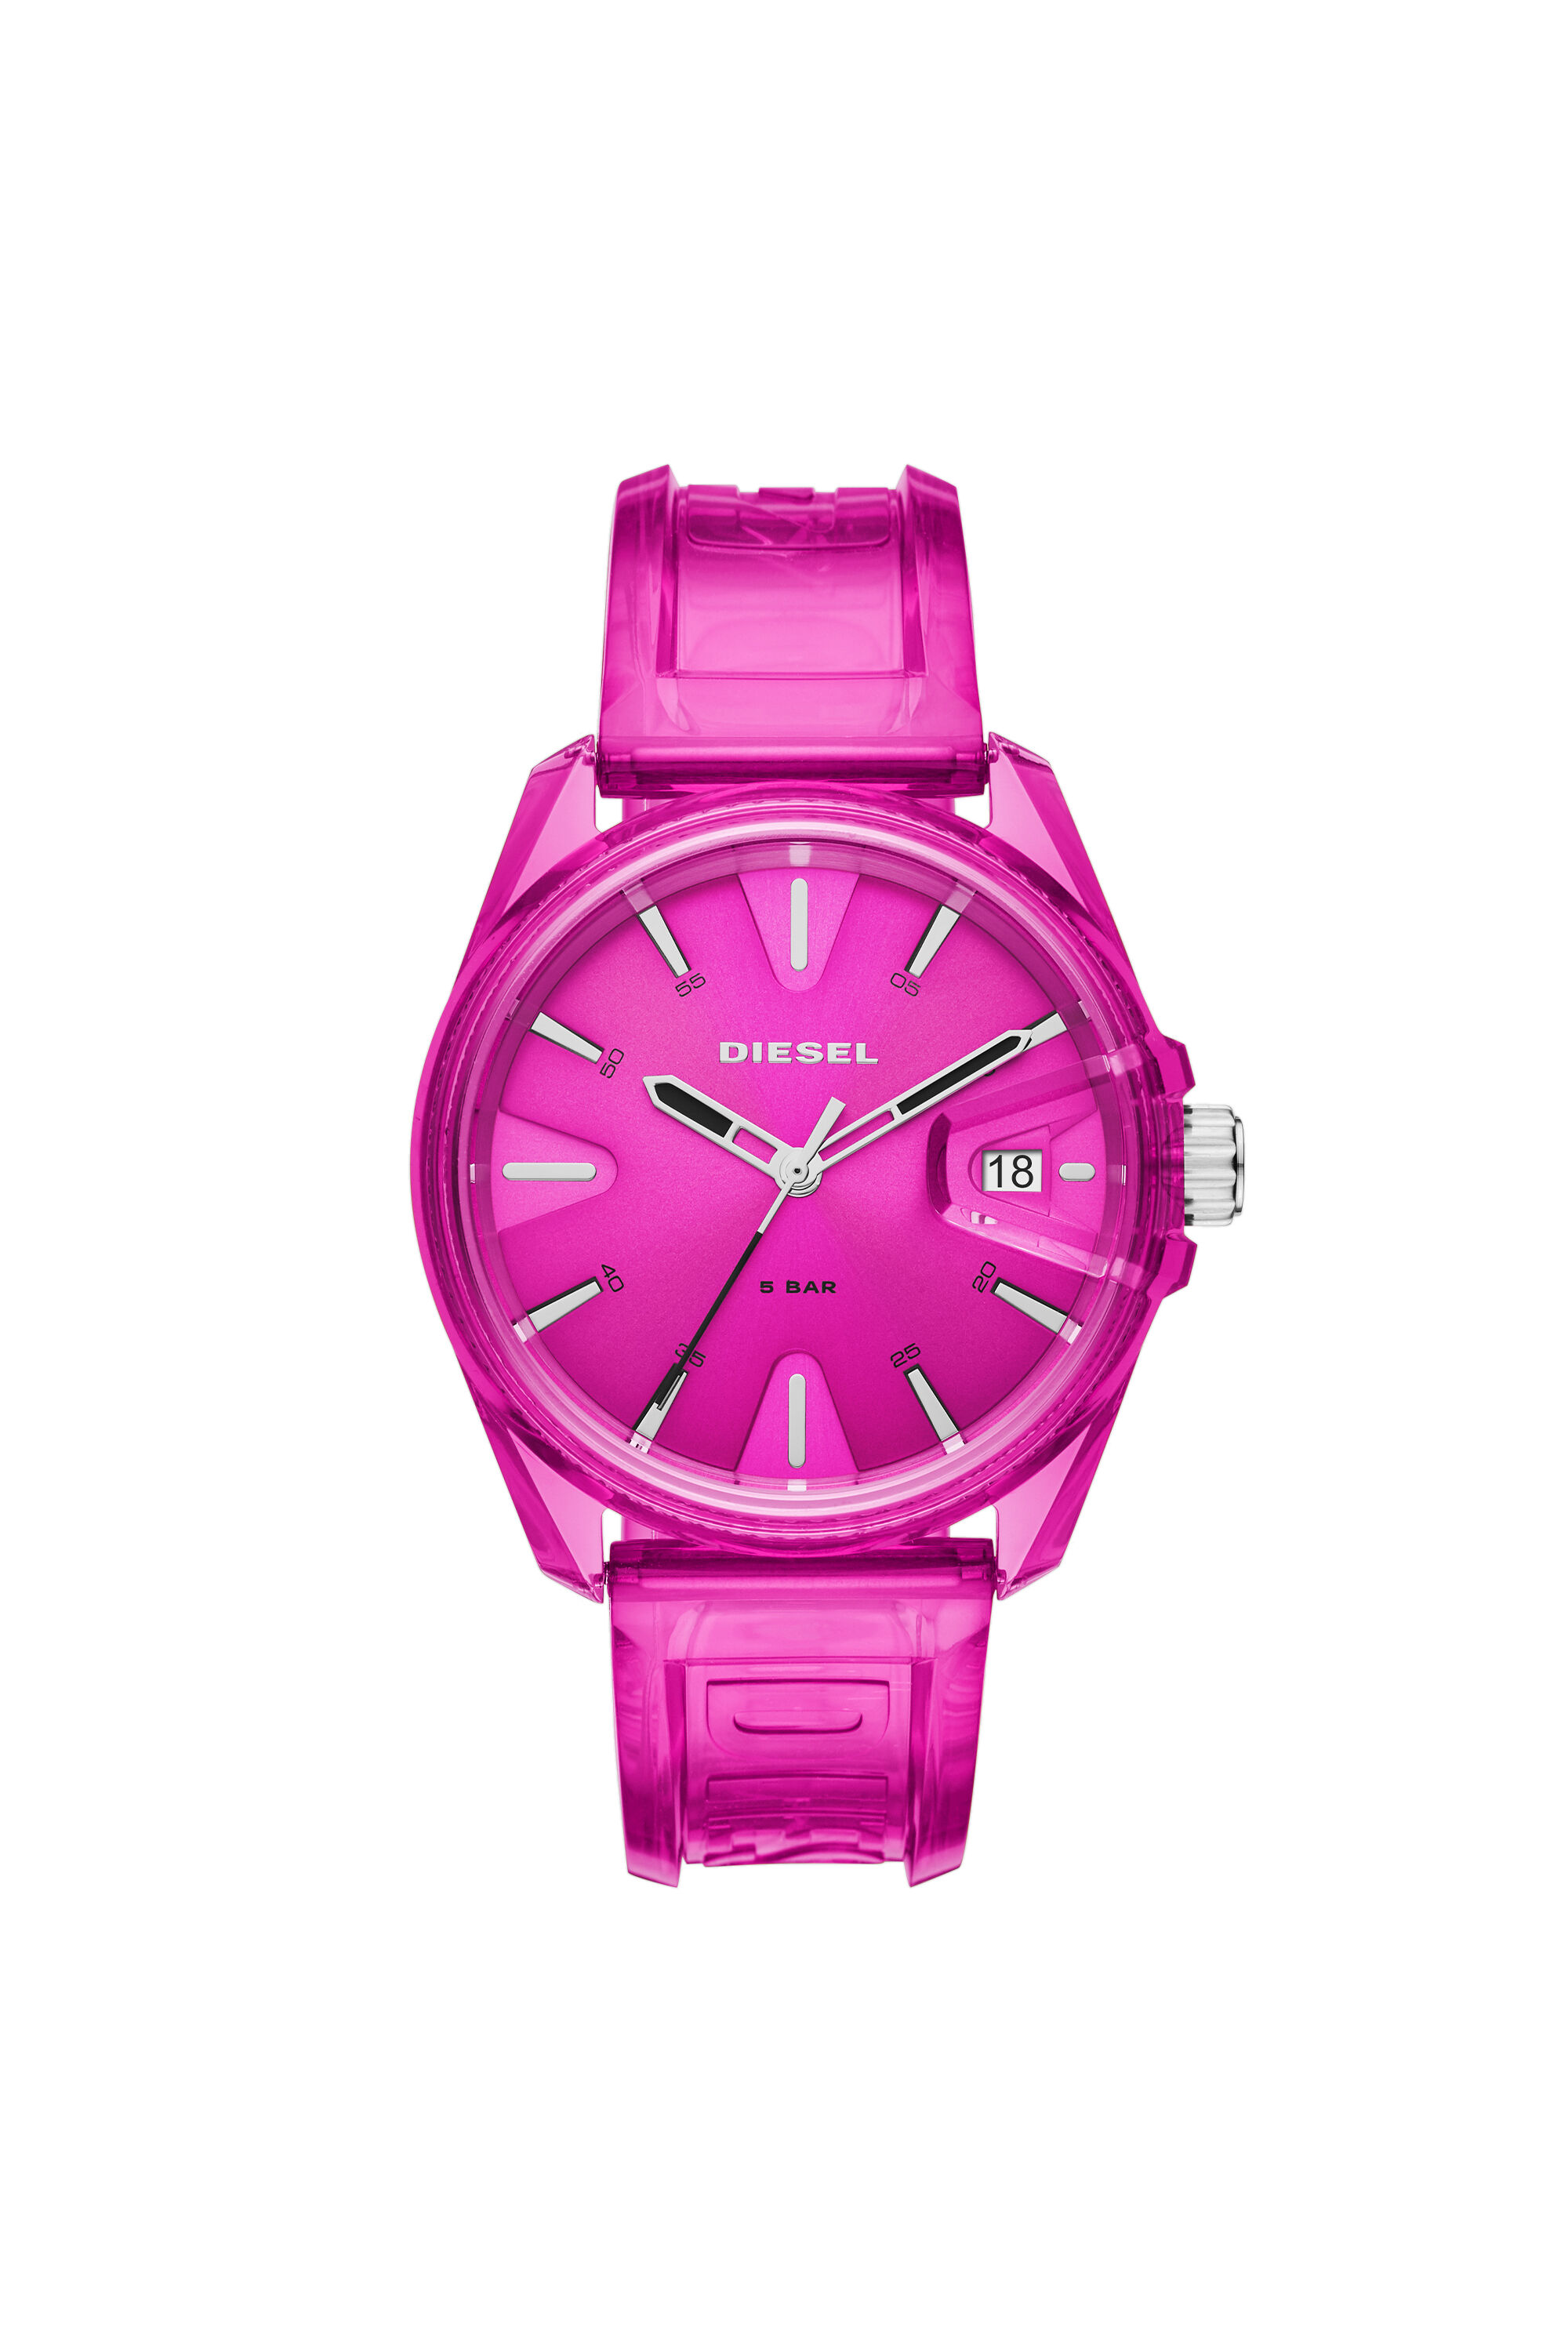 Diesel - DZ1929, Unisex MS9 three-hand pink transparent watch in Pink - Image 1